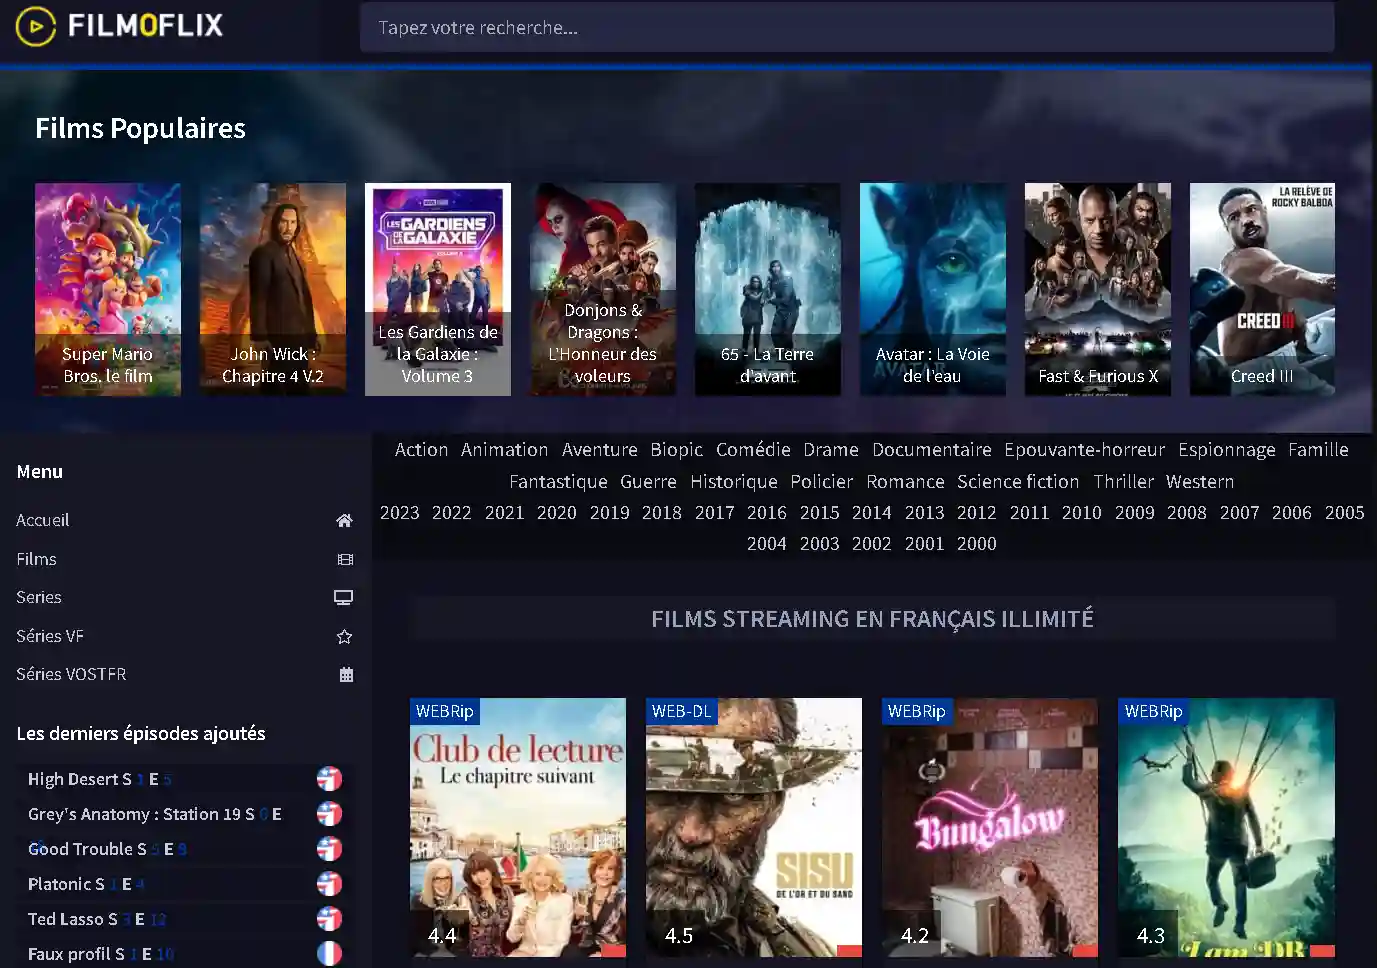 découvrez la nouvelle adresse wiflix 2024 pour accéder facilement à vos films et séries préférés en streaming. restez à jour avec les dernières informations et offres de wiflix pour profiter d'une expérience de visionnage inégalée.